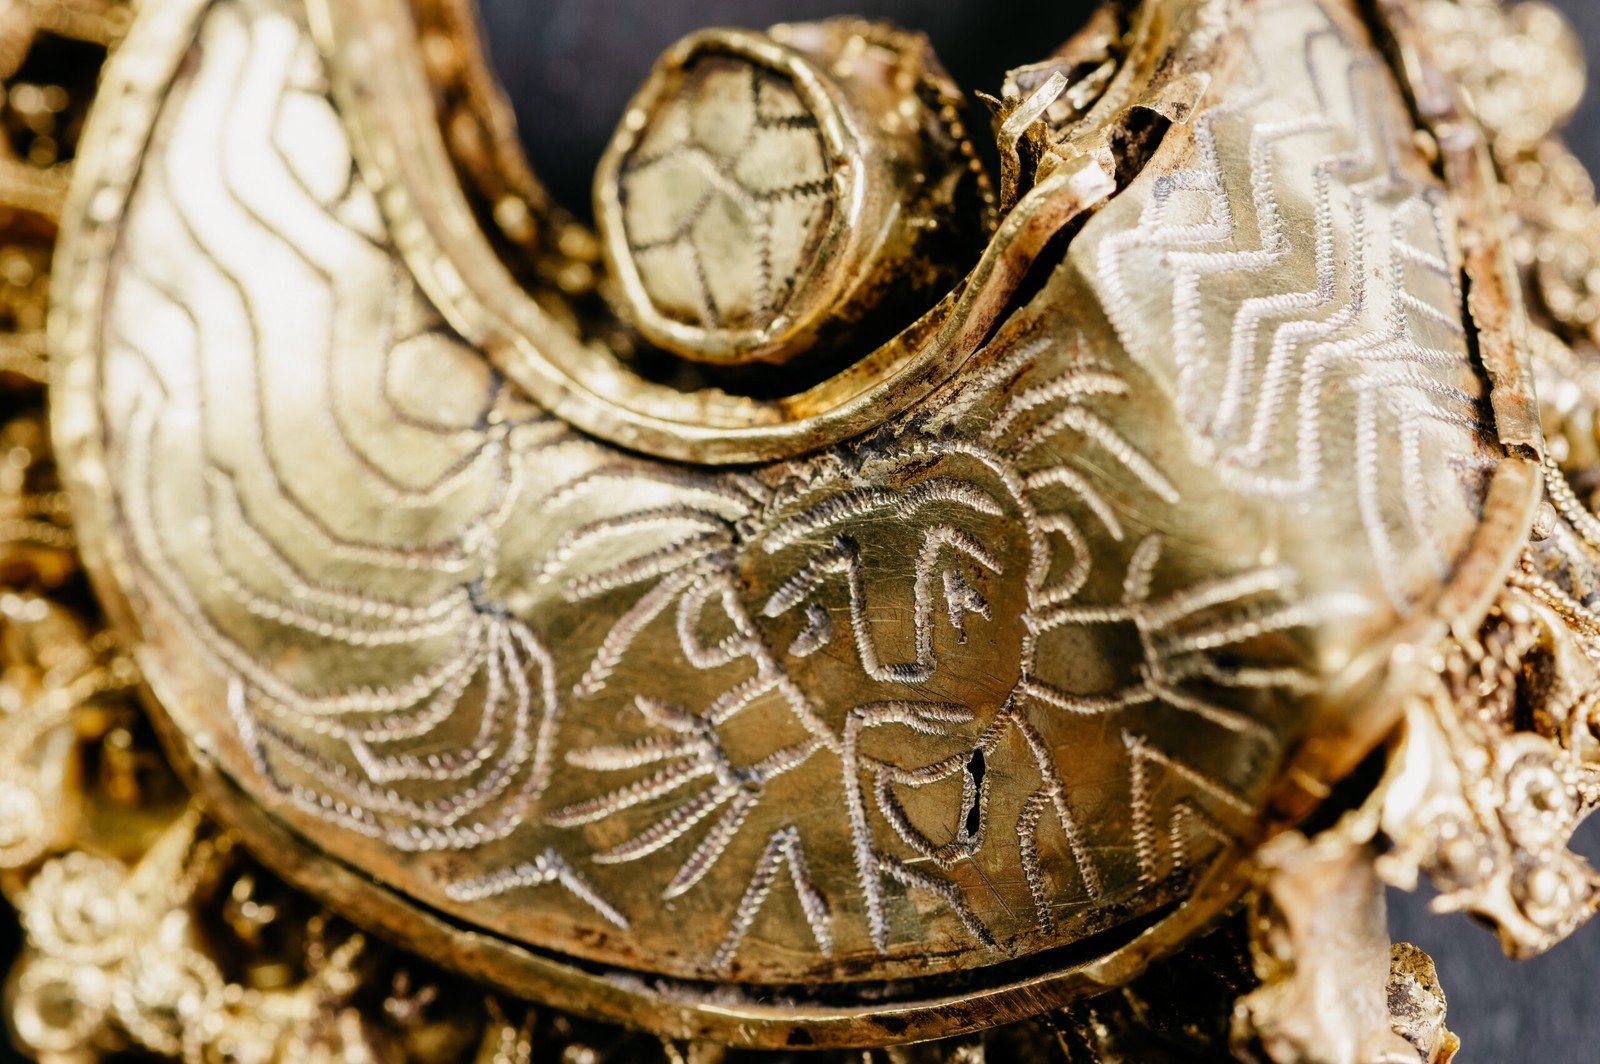 Detalhe de brinco em ouro com decoração gravada encontrado na Holanda  — Foto: Arqueologia West-Friesland/Fleur Schinning